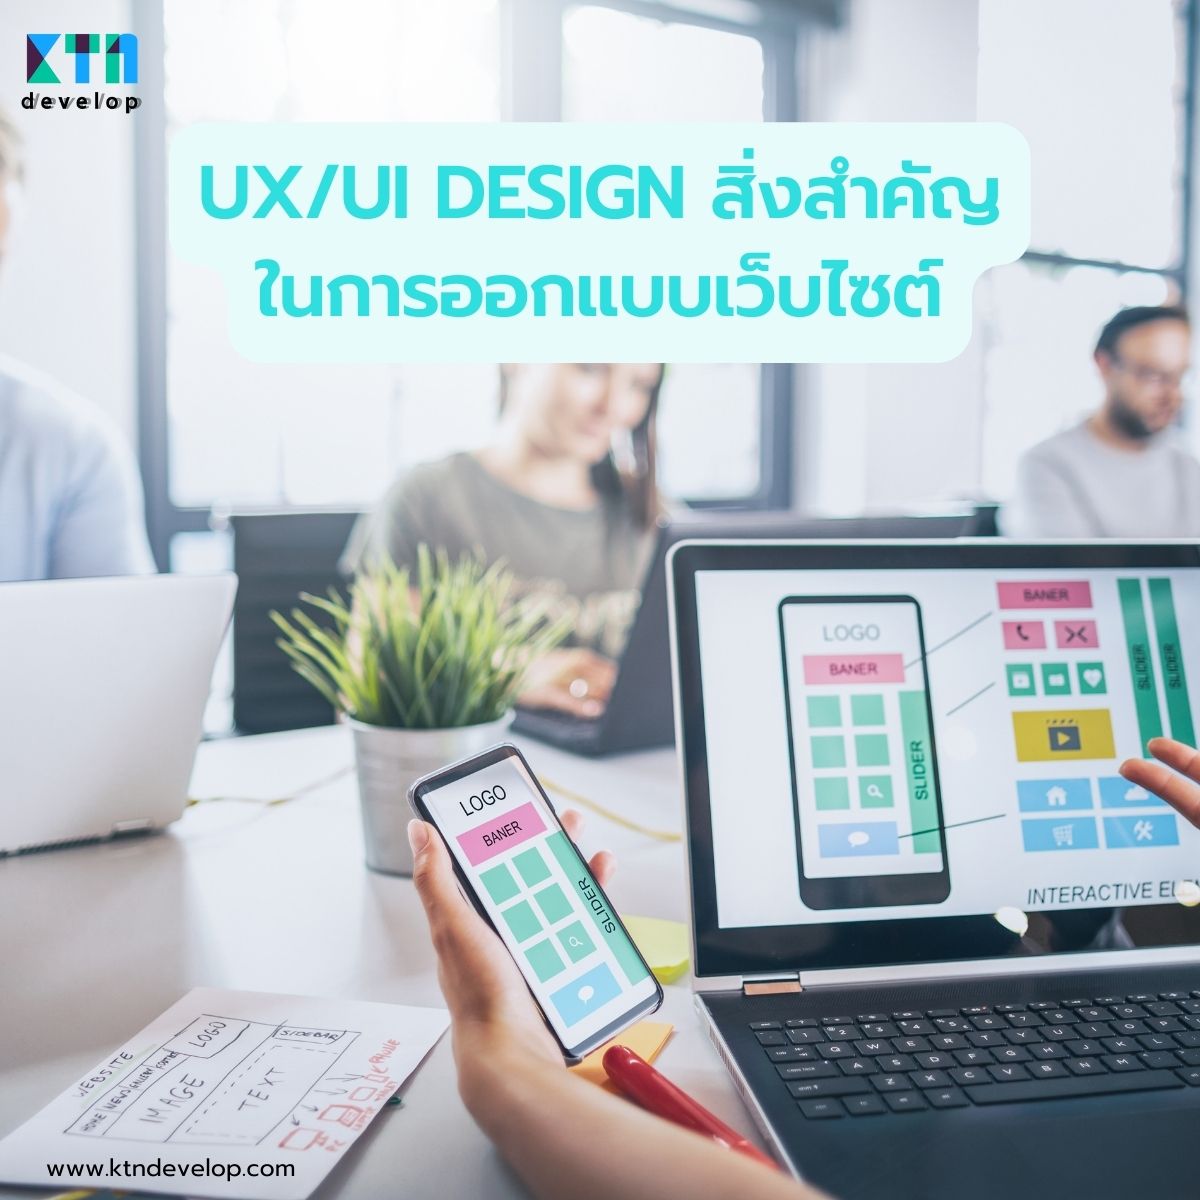 UXUI Design สิ่งสำคัญในการออกแบบเว็บไซต์